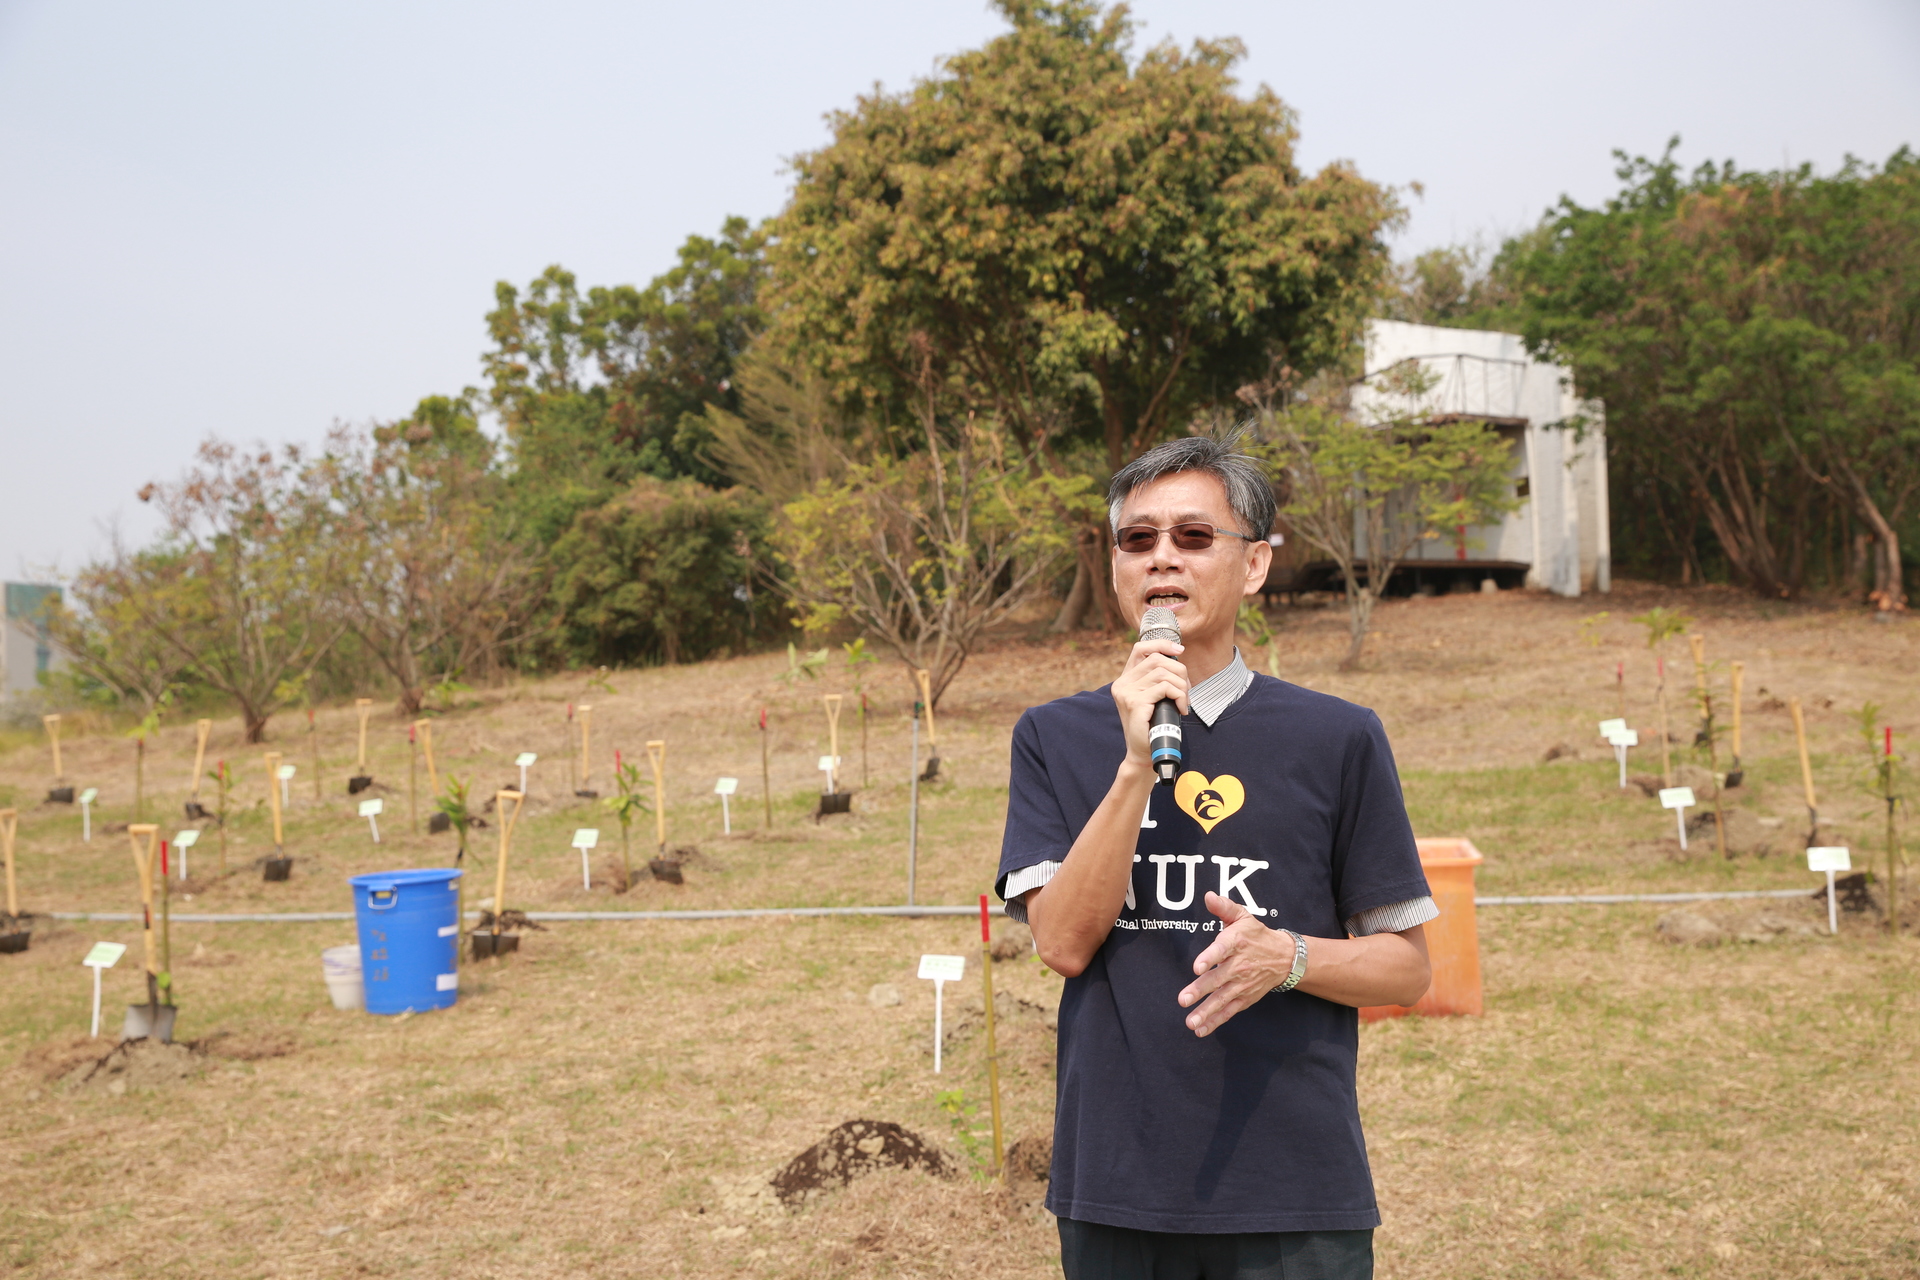 行政副校長連興隆策畫植樹造林減碳活動